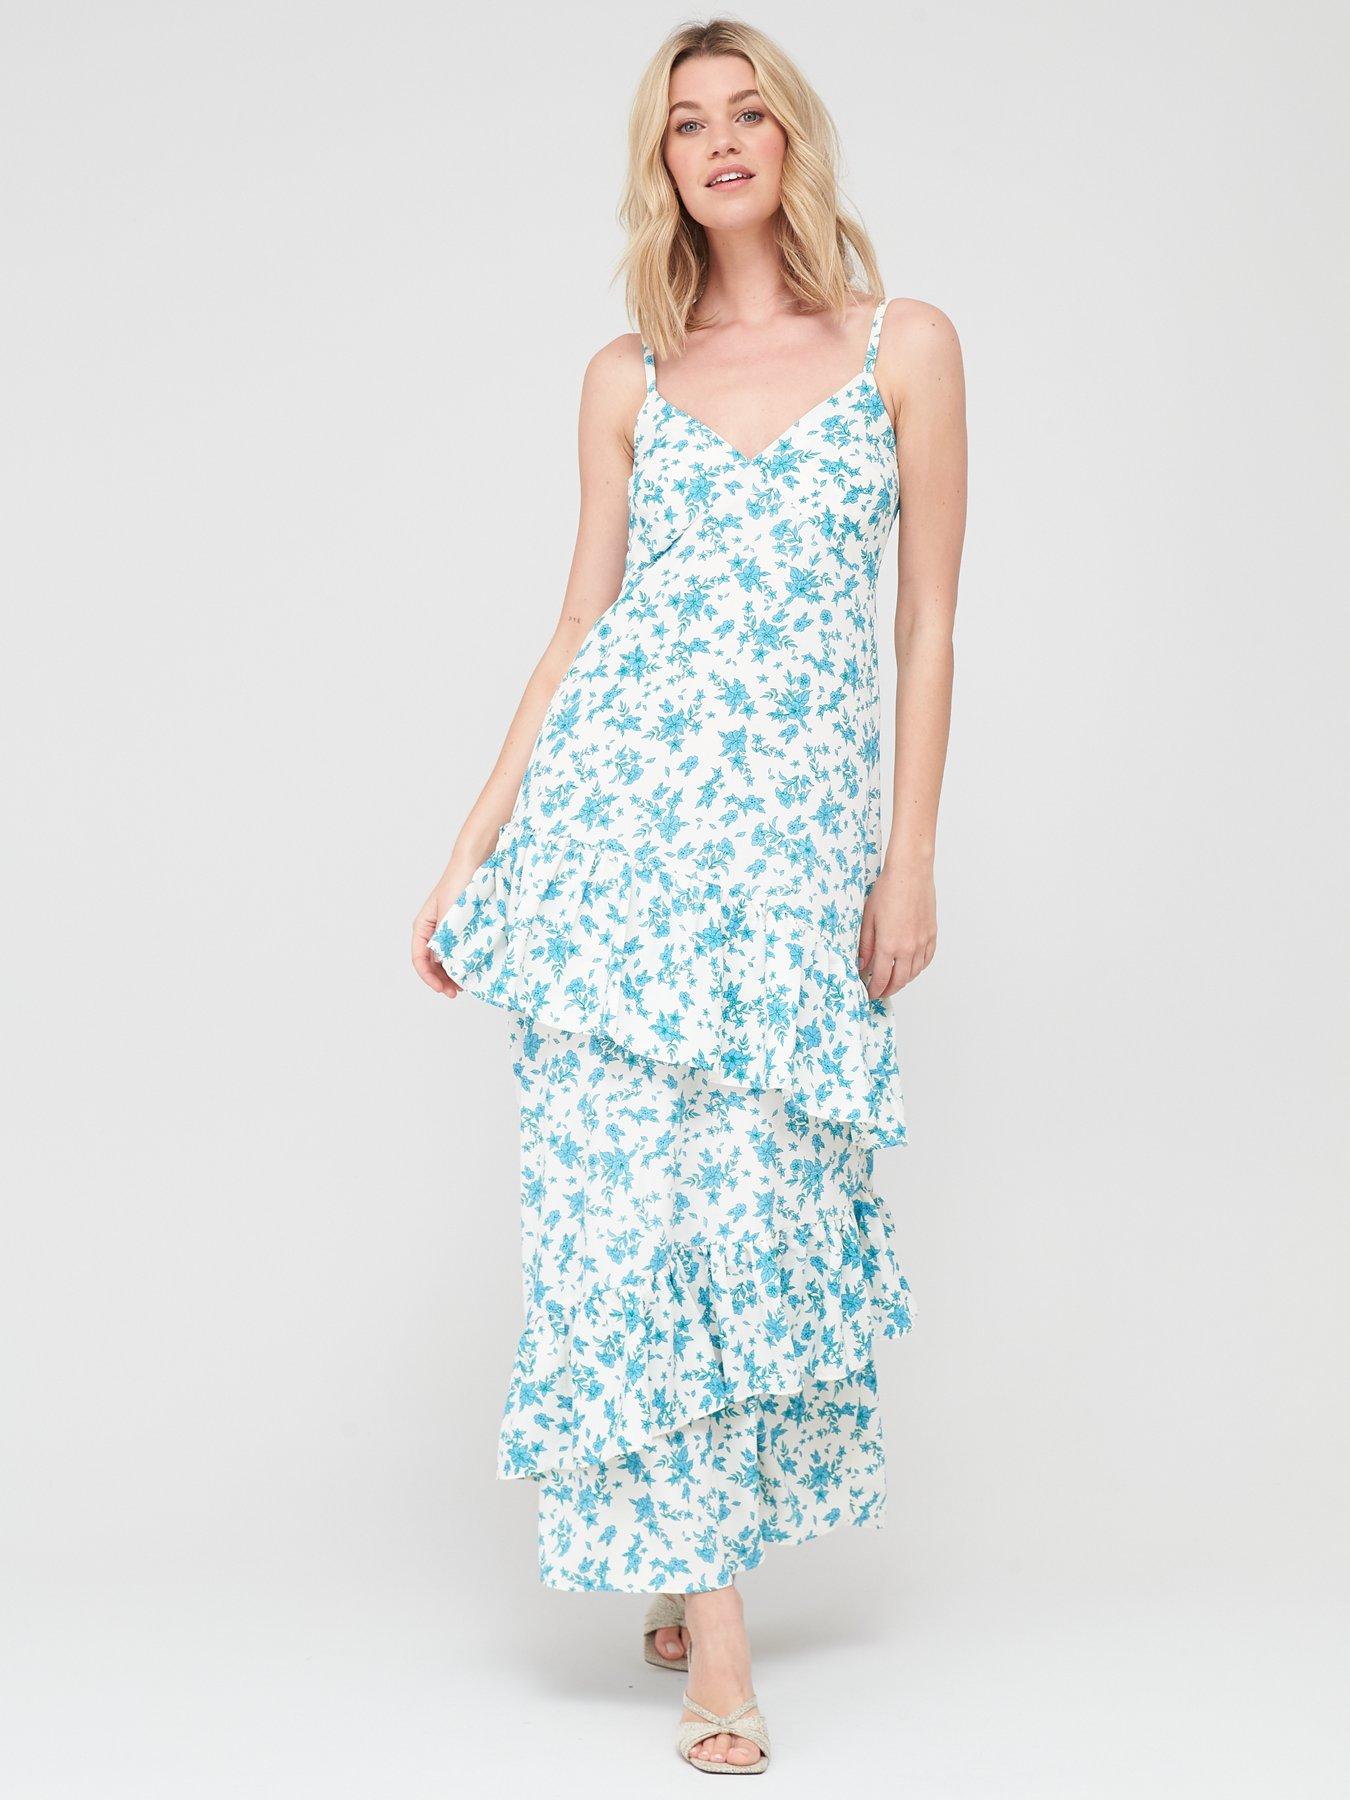 Summer Linen Dresses Clearance Online ...